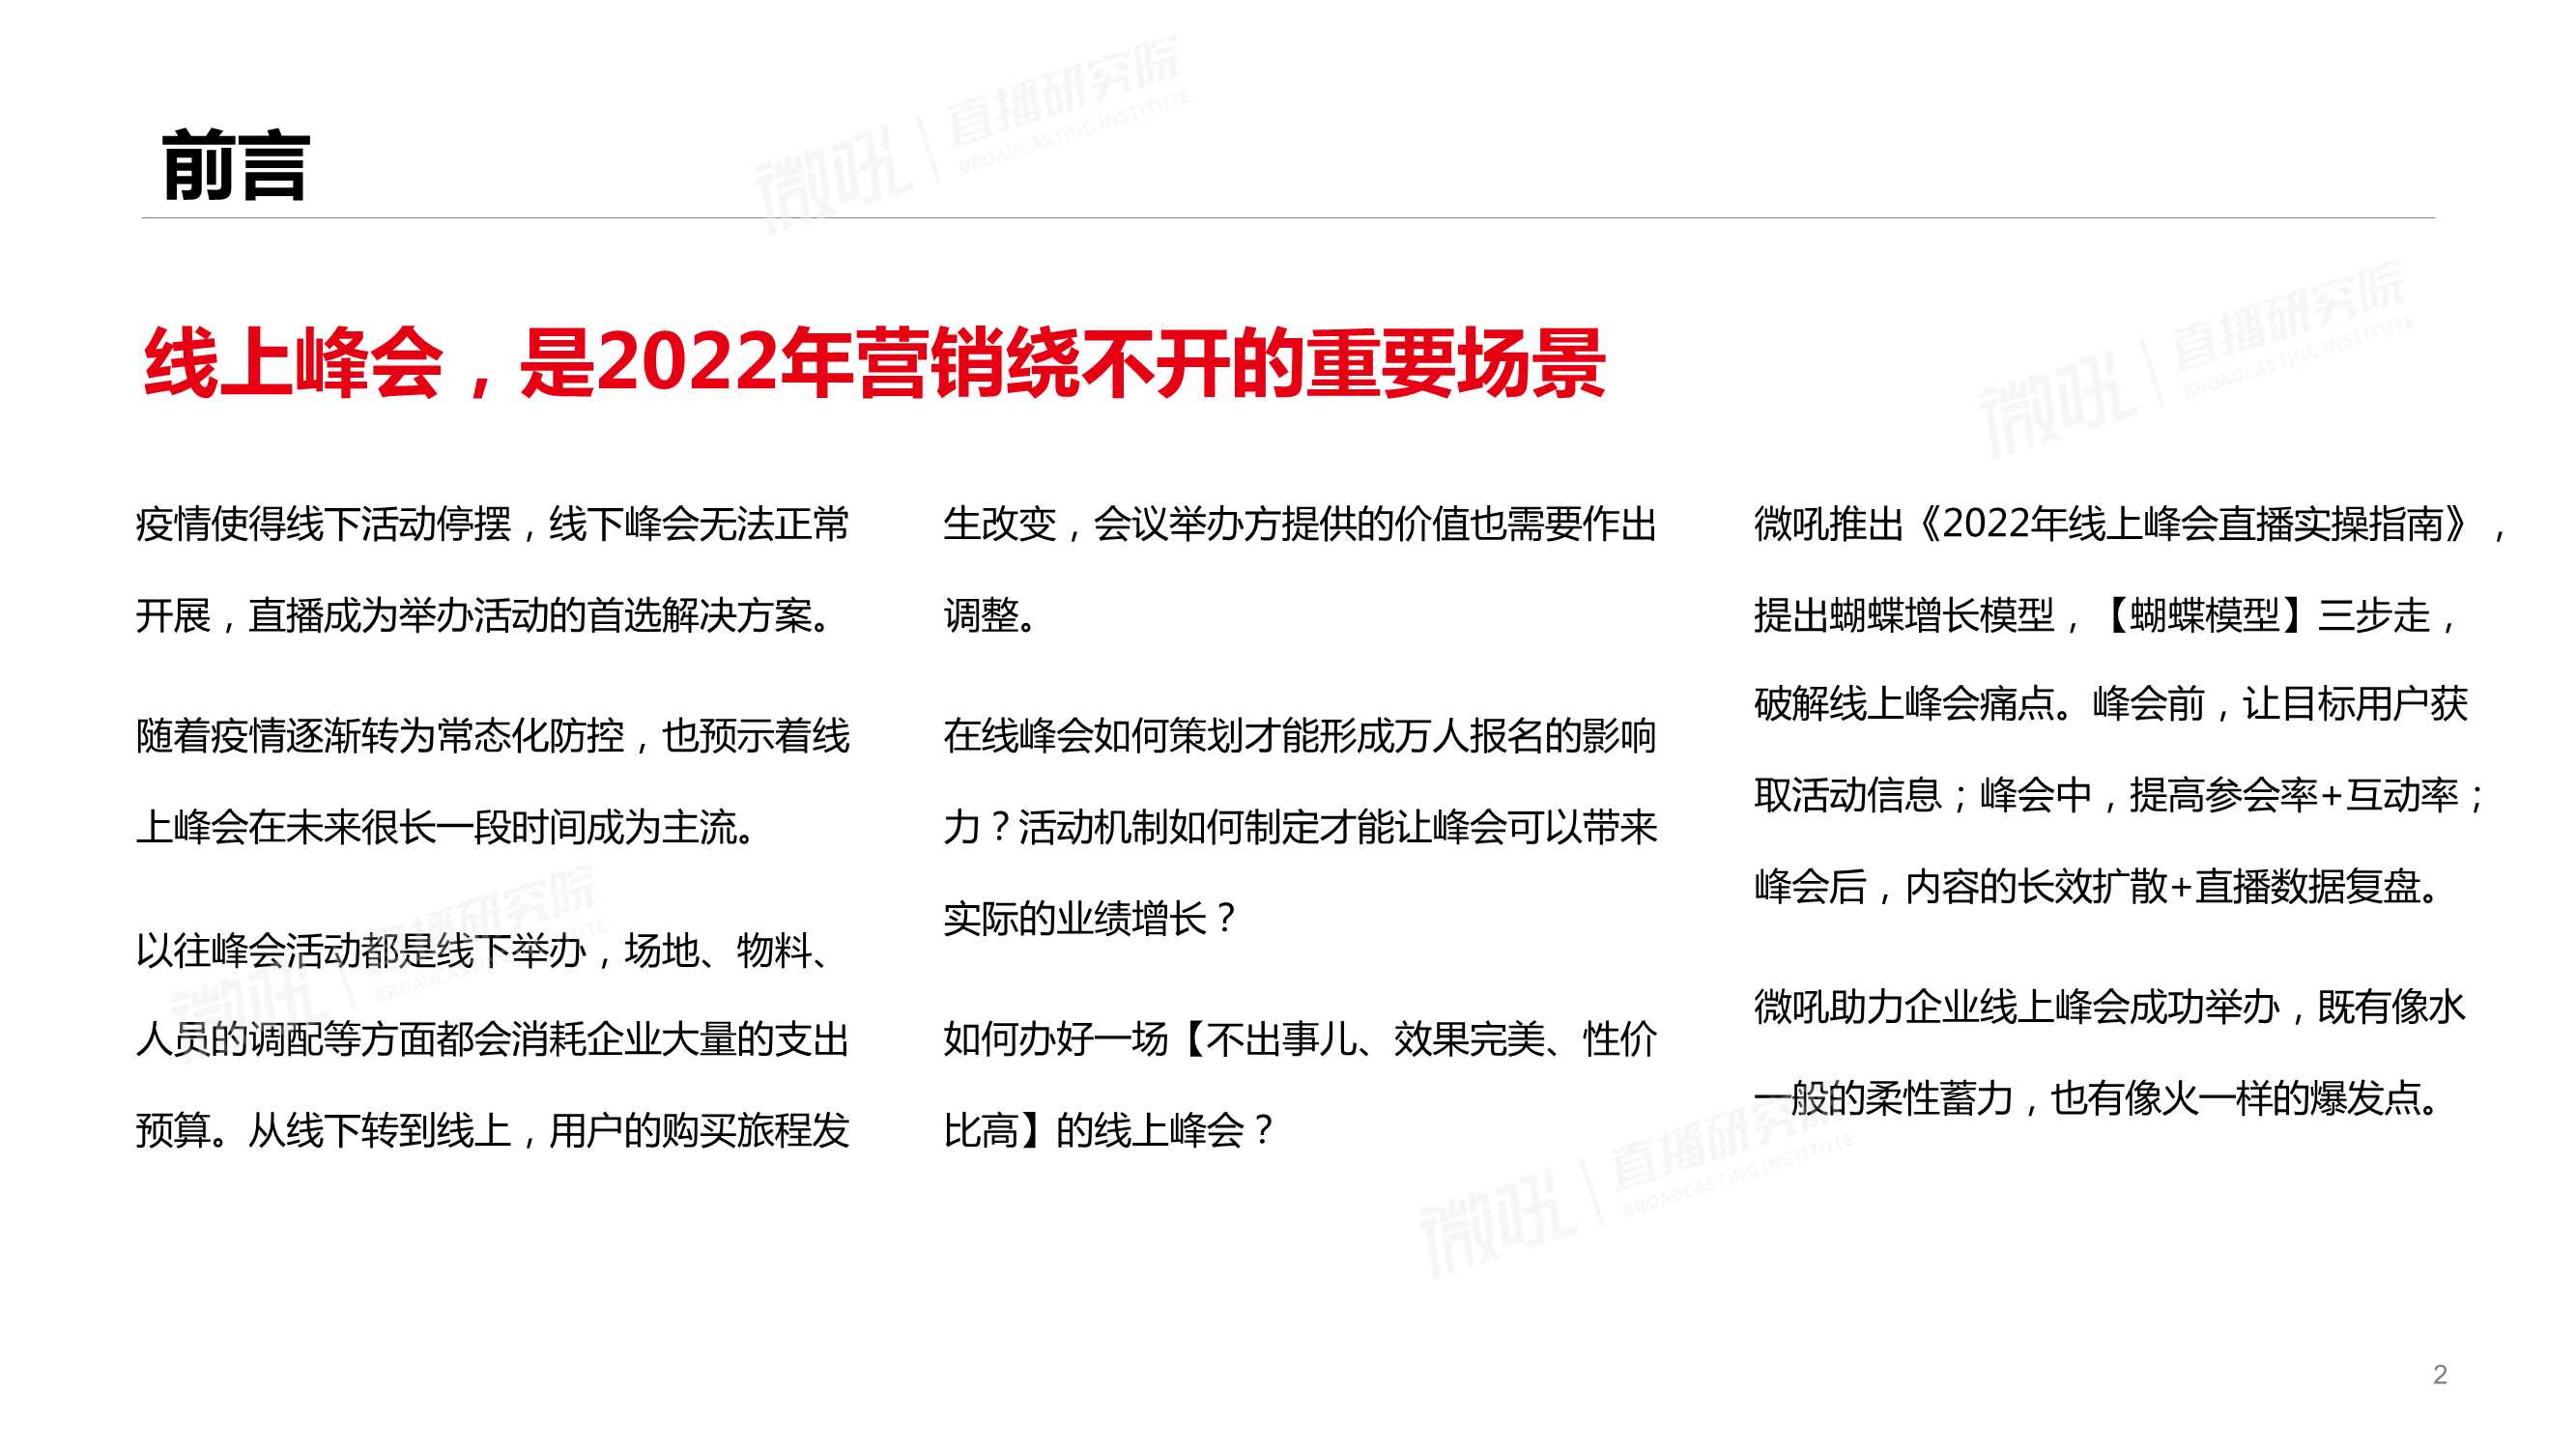 微吼&直播研究院-2022线上峰会直播实操指南-2022.04-50页